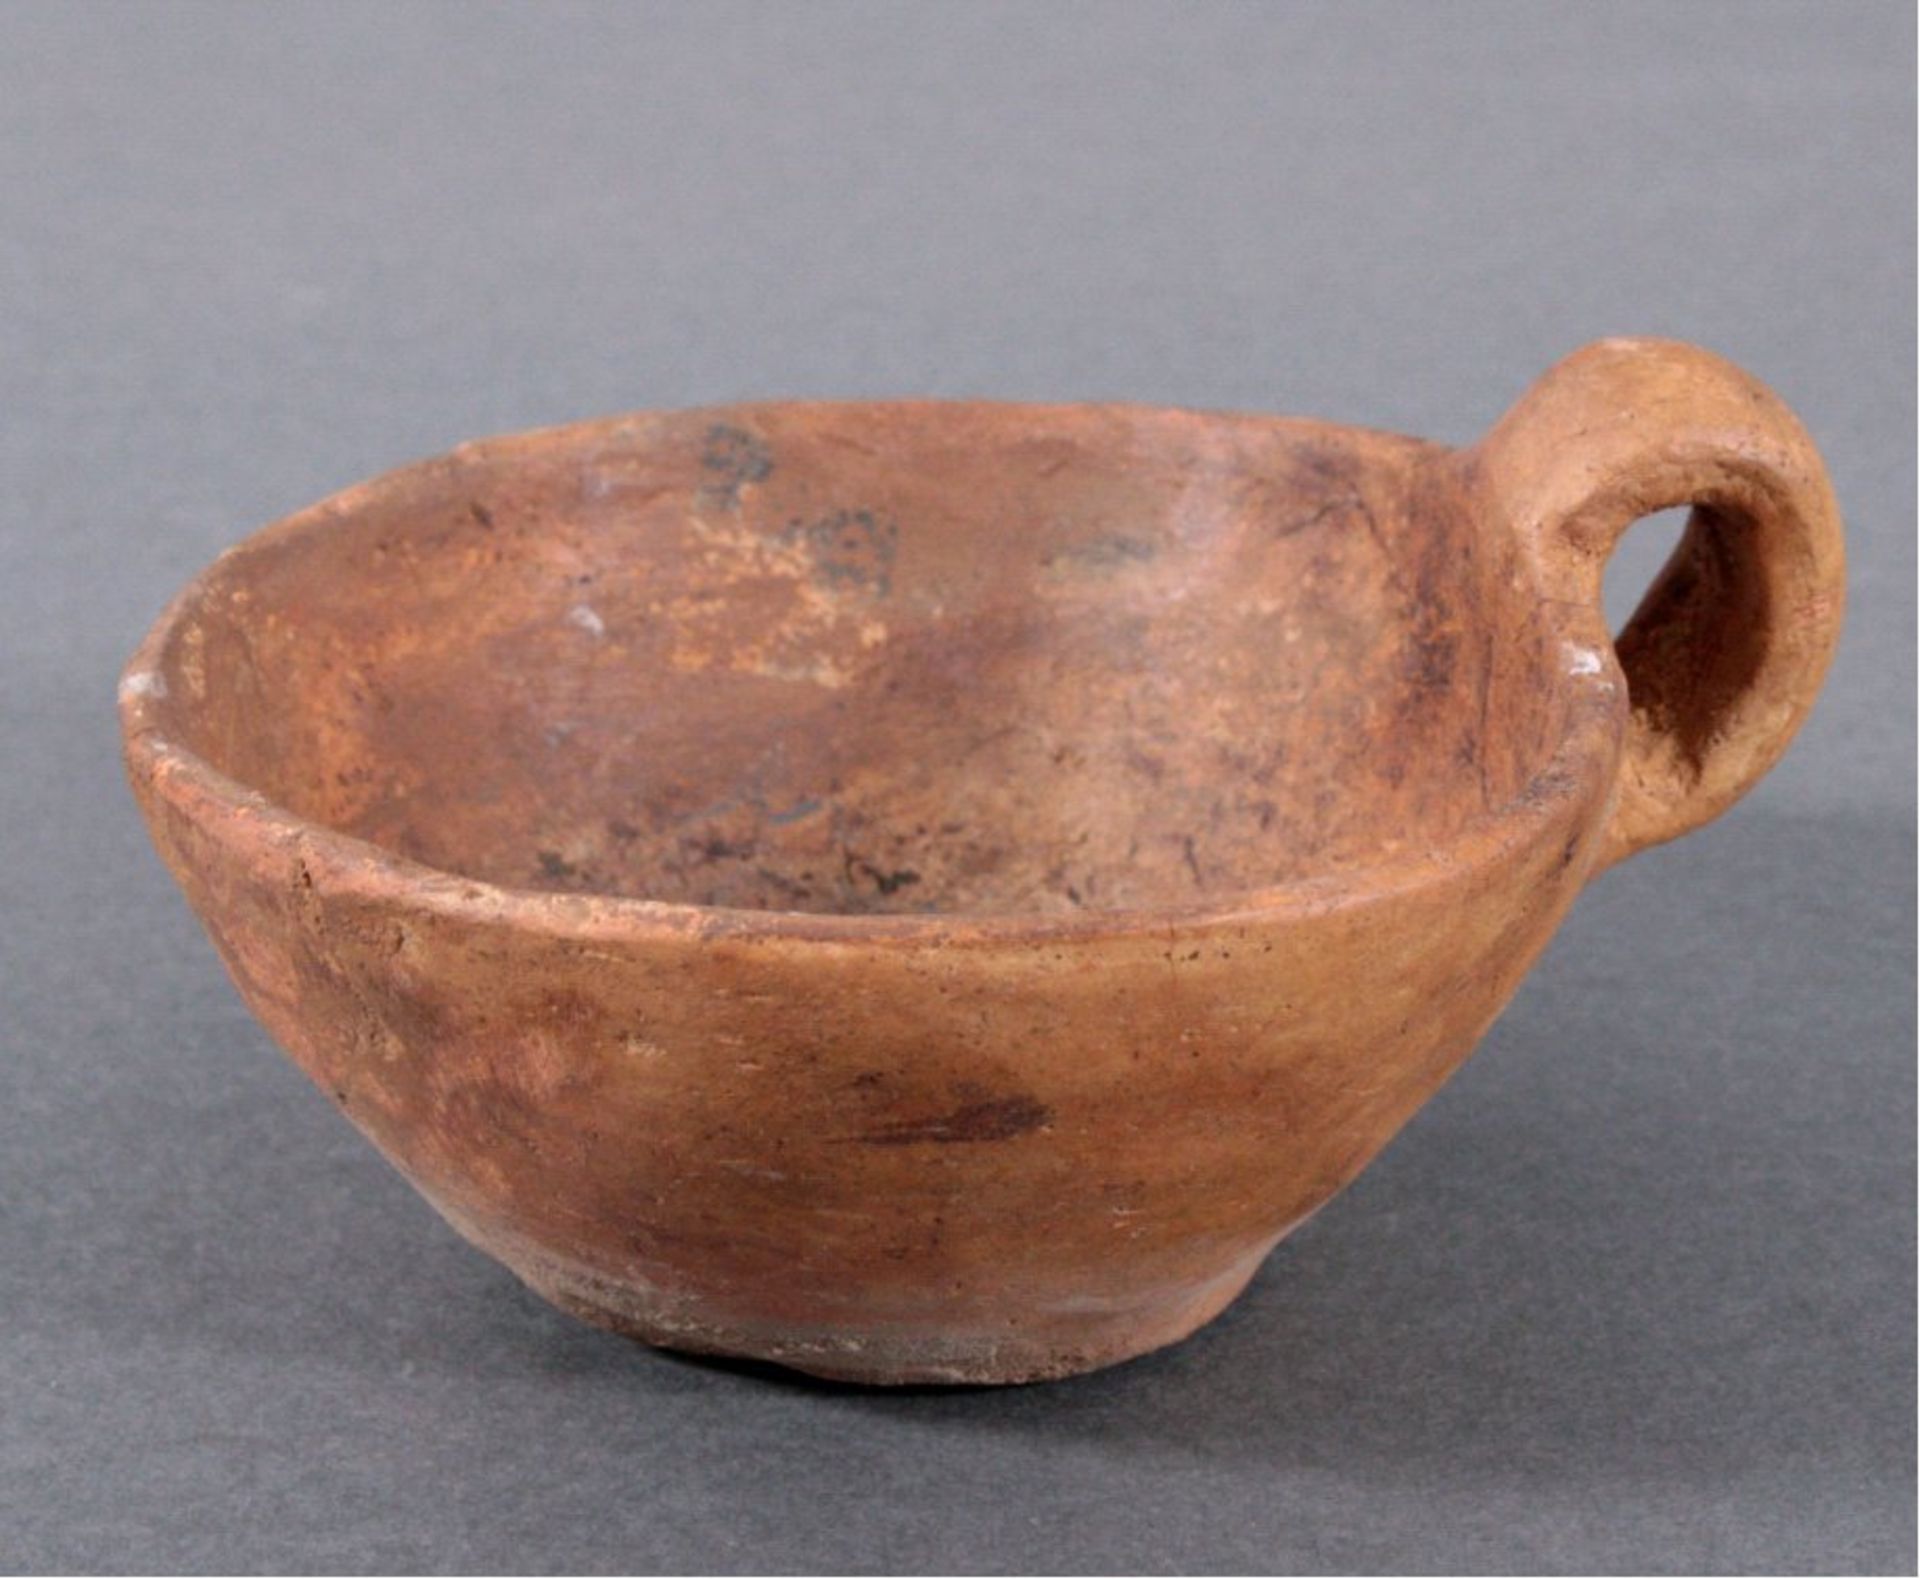 Omphalosschöpfer, Lausitzer Kultur - 900- 500 v.Chr.Bronzezeit, mit hohem Rand, aus rötlich-